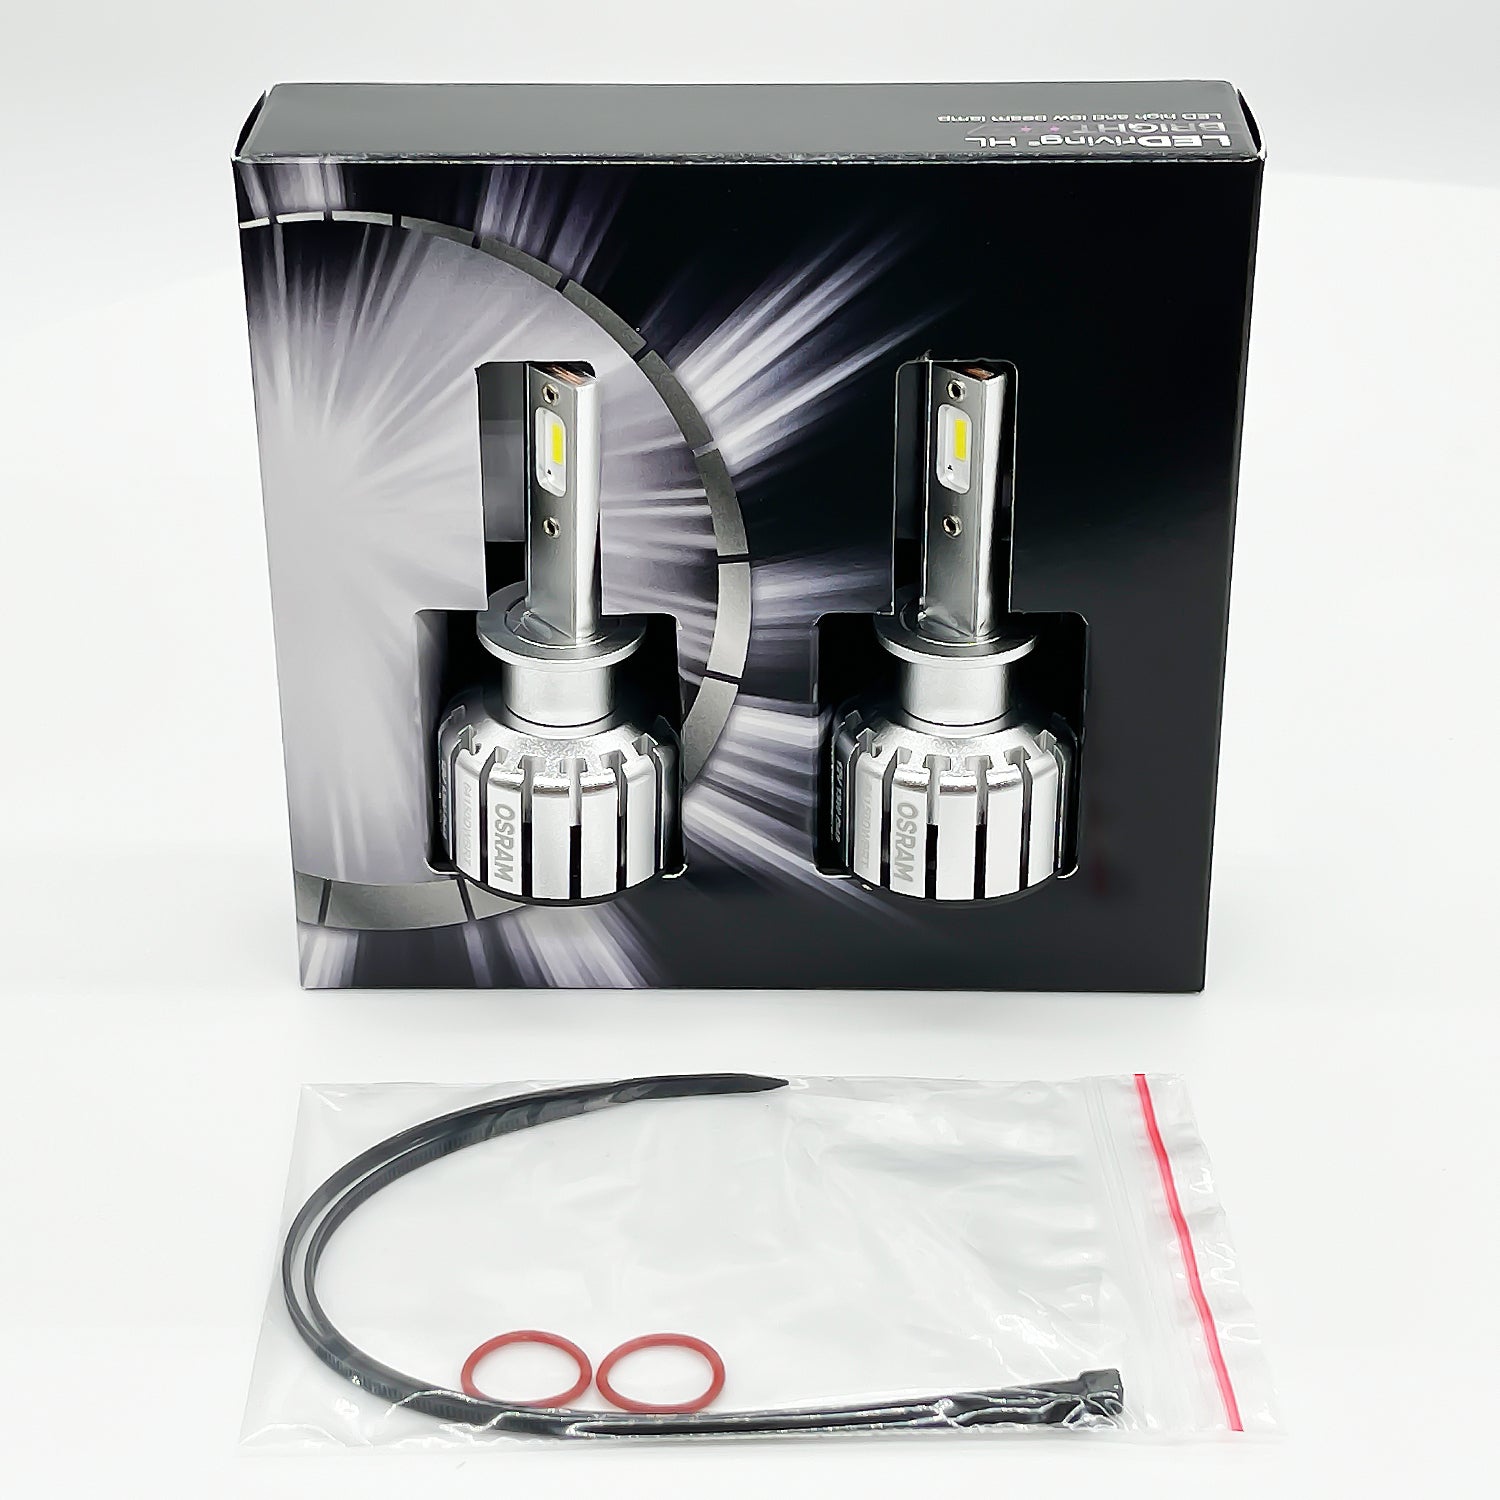 OSRAM New LED H1 LEDriving YLZ Car Head Light 18W P14.5s 6000K